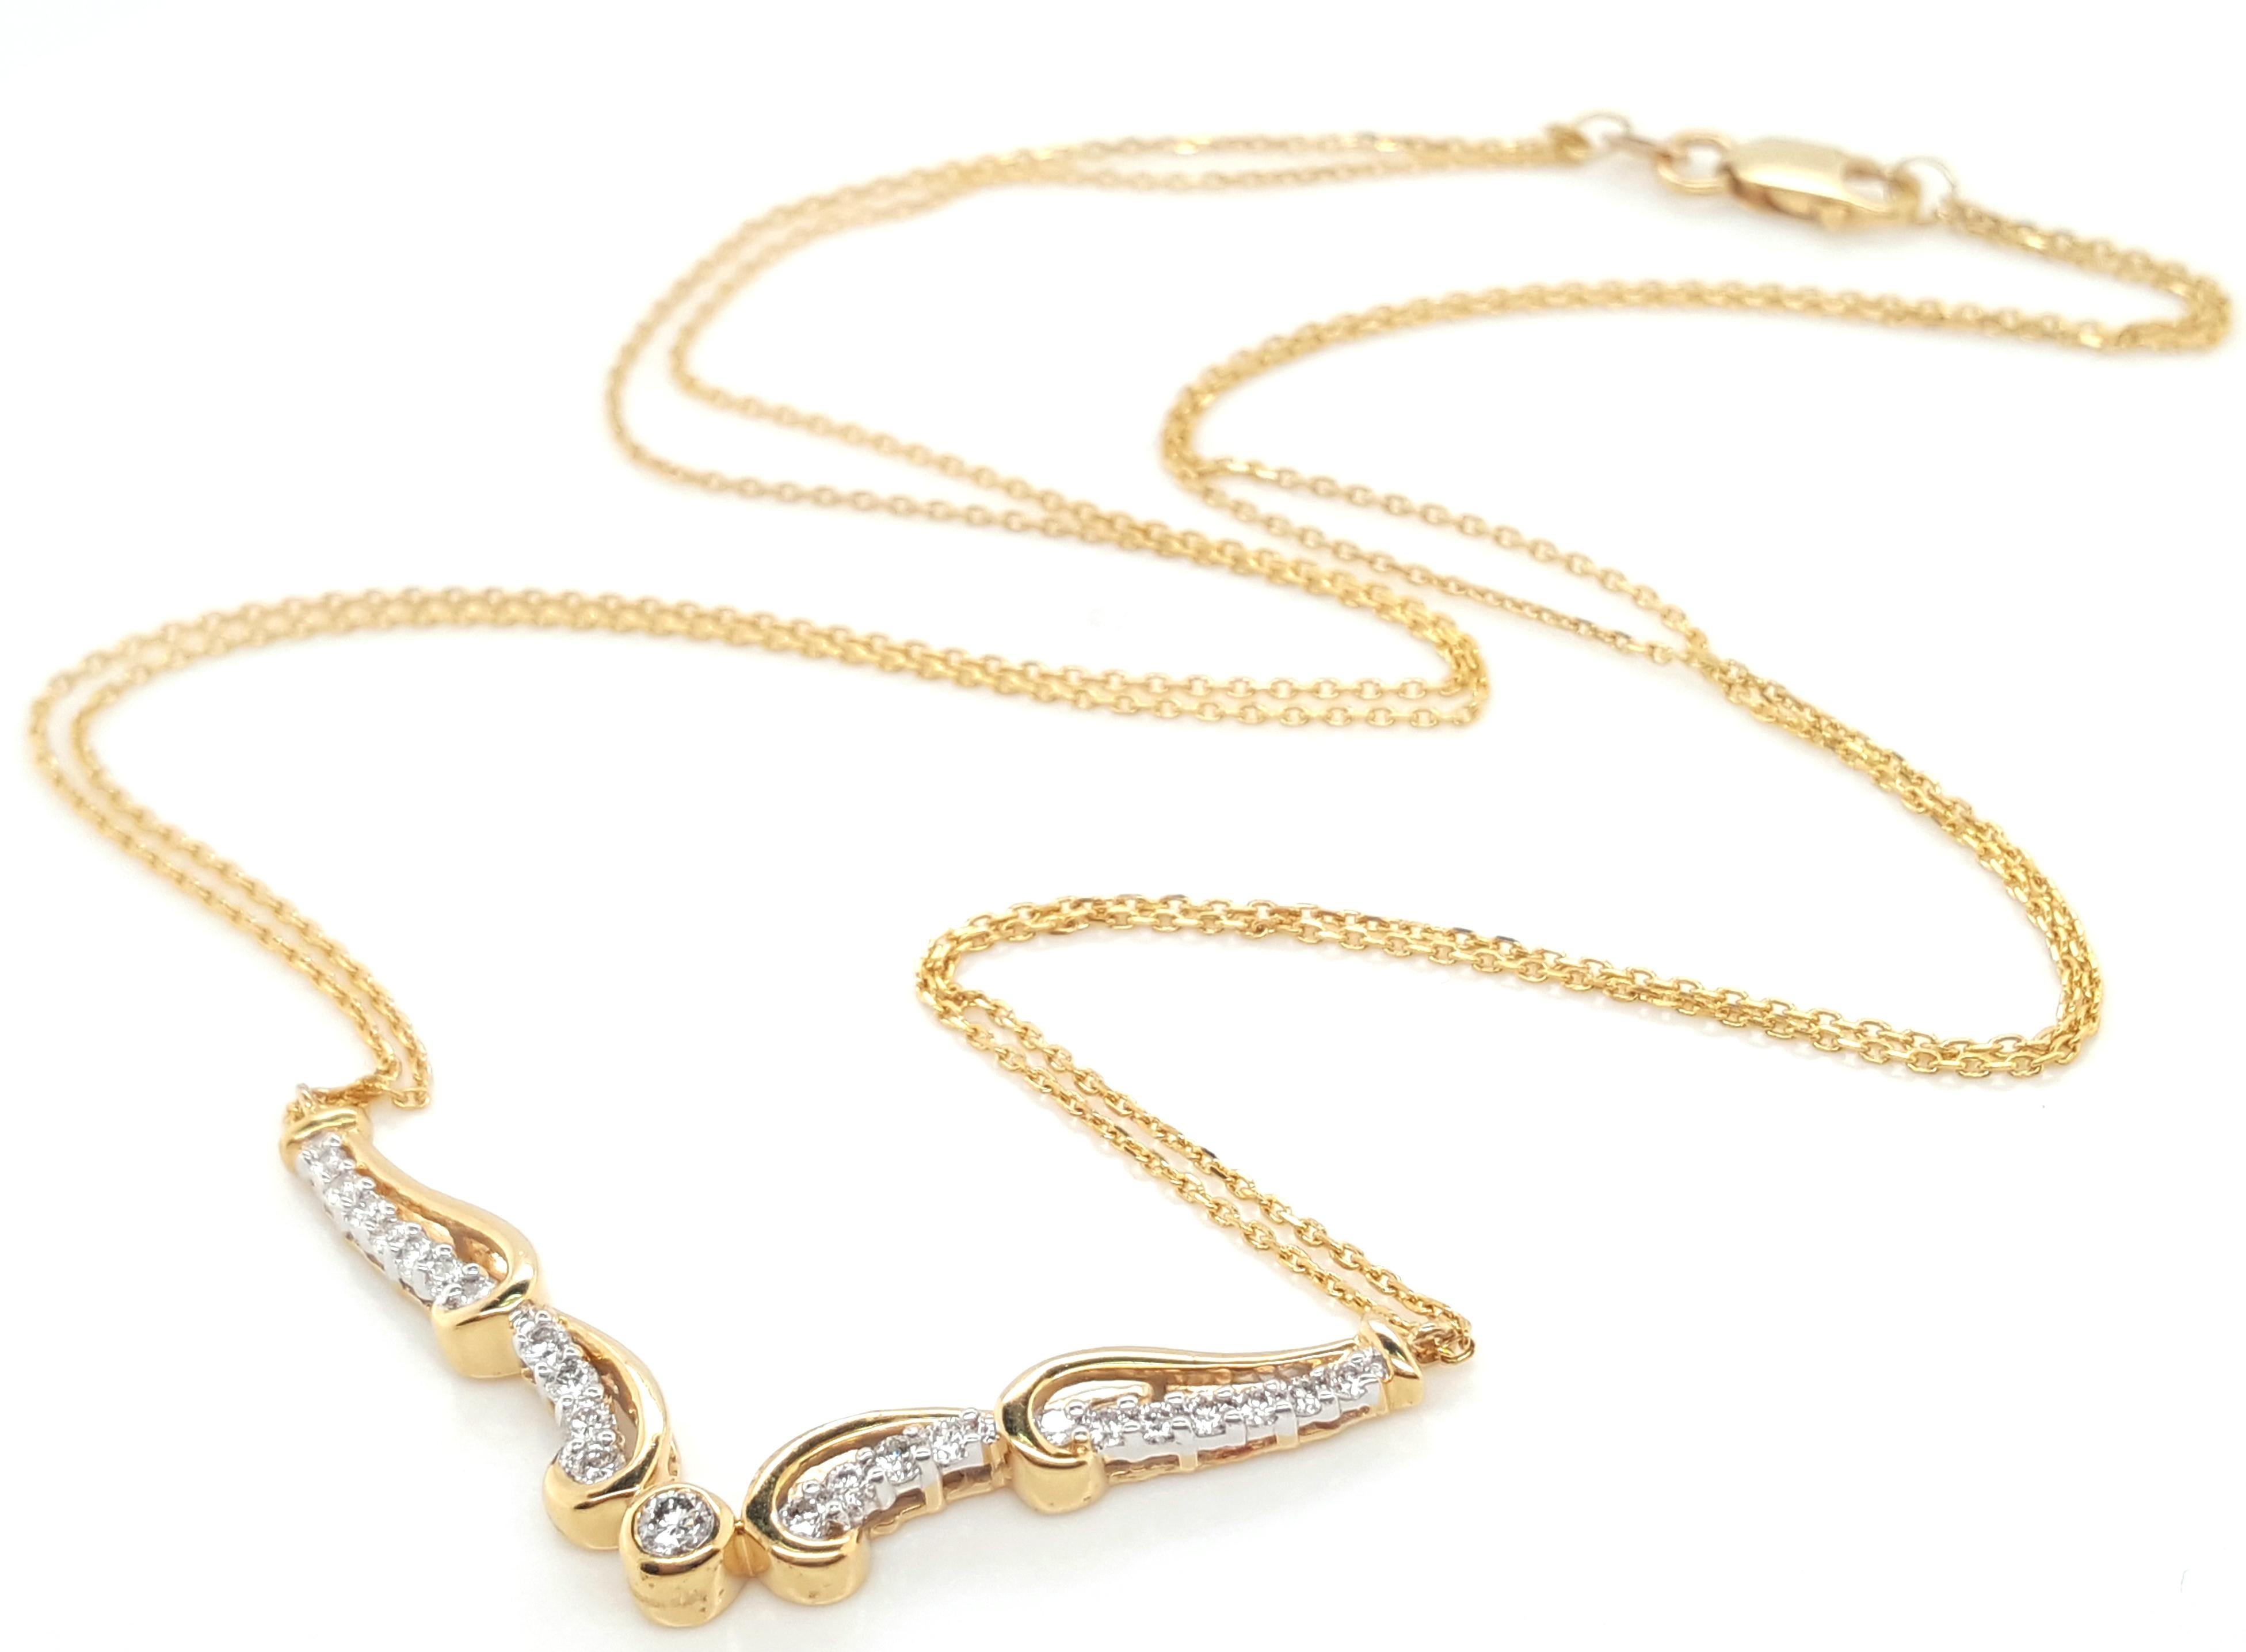  collier de diamants en or jaune 18 carats avec chaîne double  Ce collier classiquement étonnant comprend  une ligne de diamants en forme de V suspendue par deux délicates chaînes à maillons en or jaune 18 carats avec un fermoir en forme de pince de